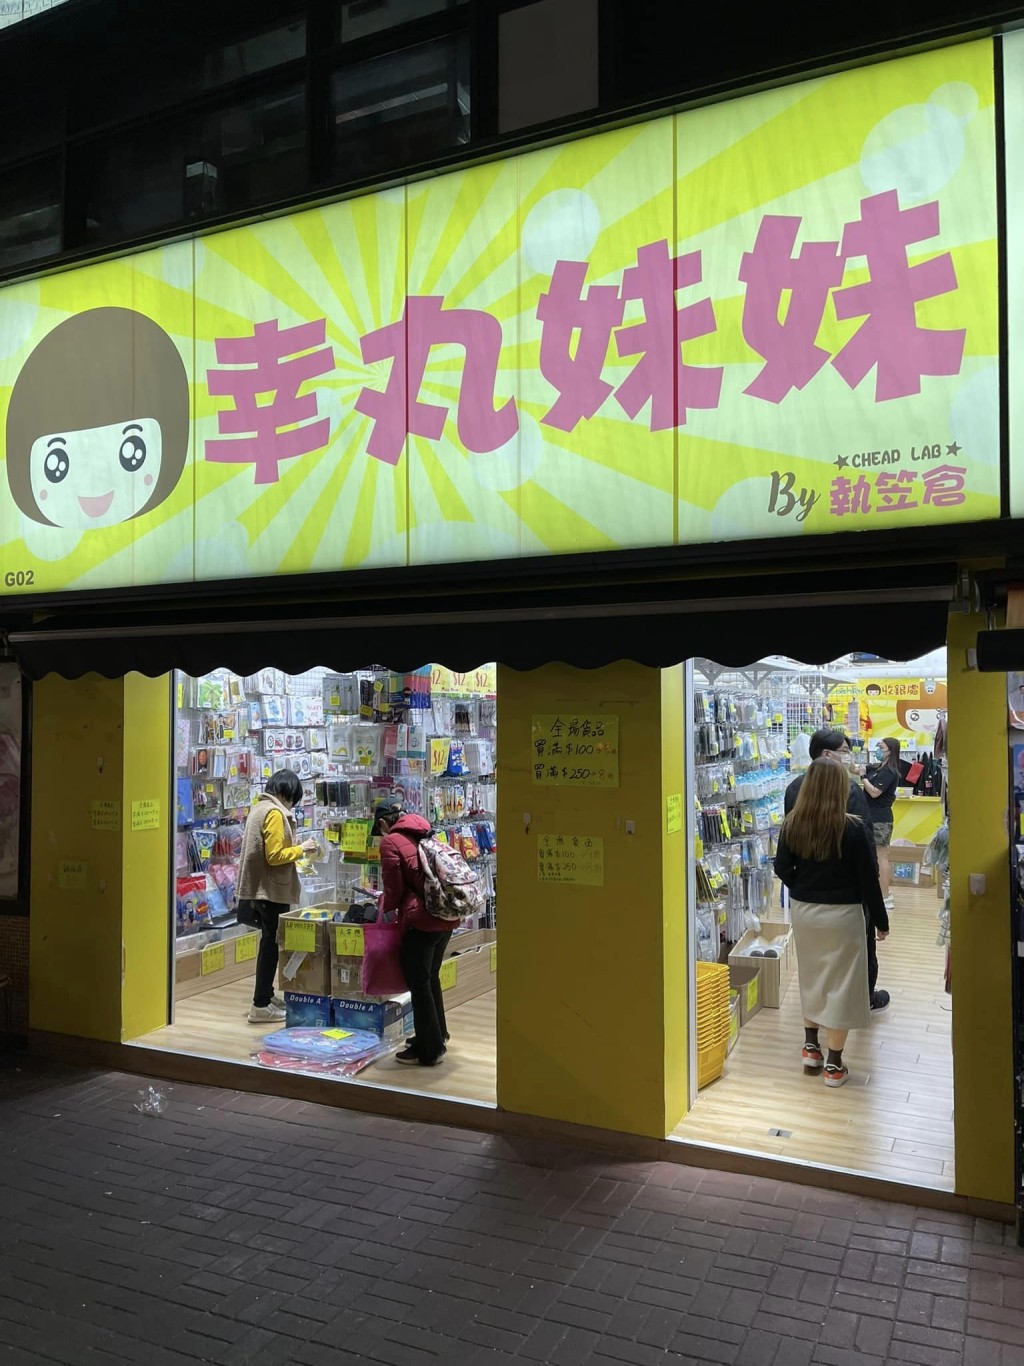 执笠仓葵芳店决定将于2月18日结束结业，场内现正进行清货大特卖。